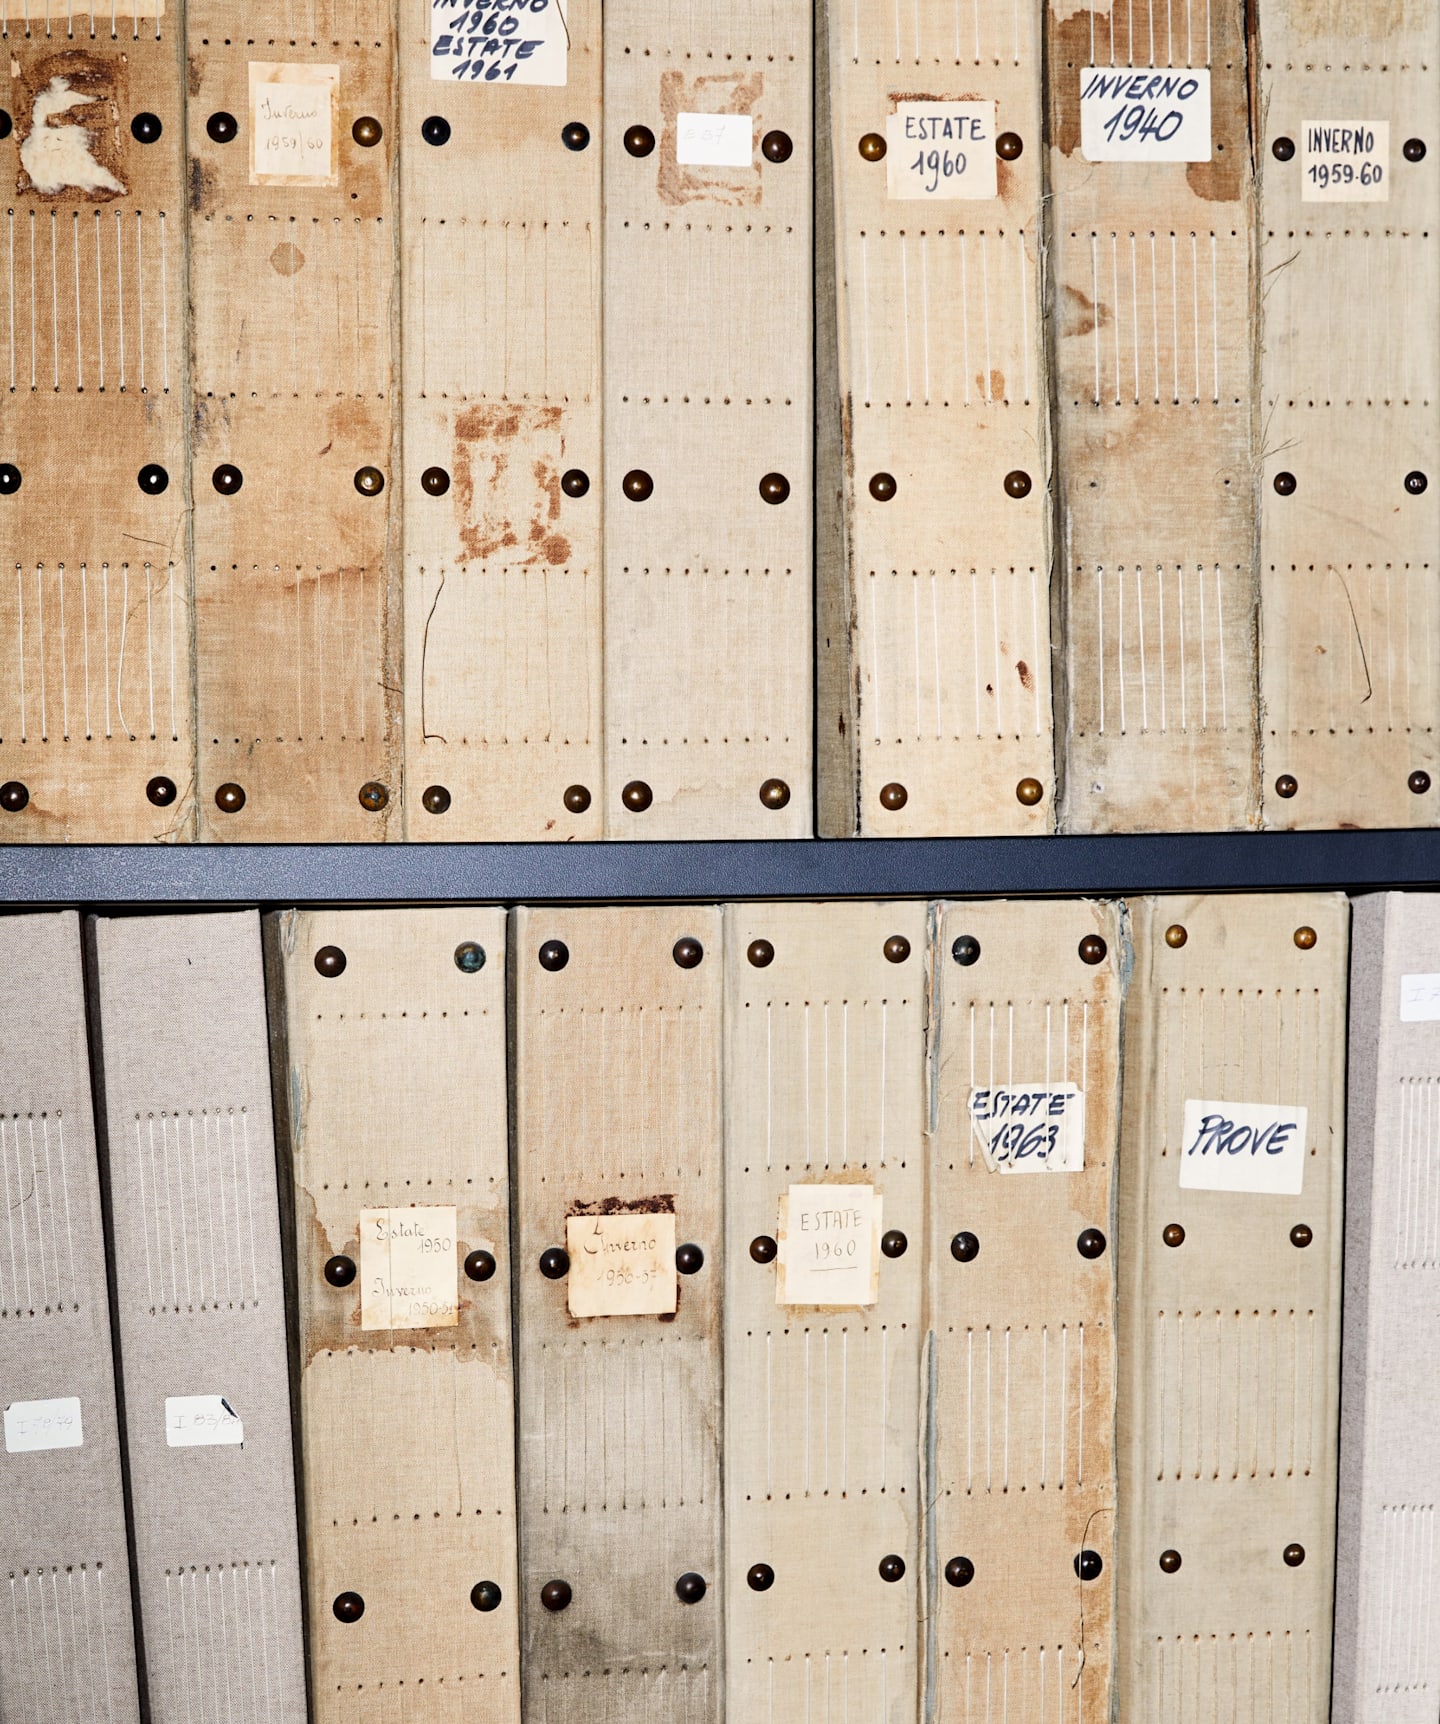 Pomieszczenie zawierające archiwa firmy: ponad 50 lat historii tkactwa i kreatywności.